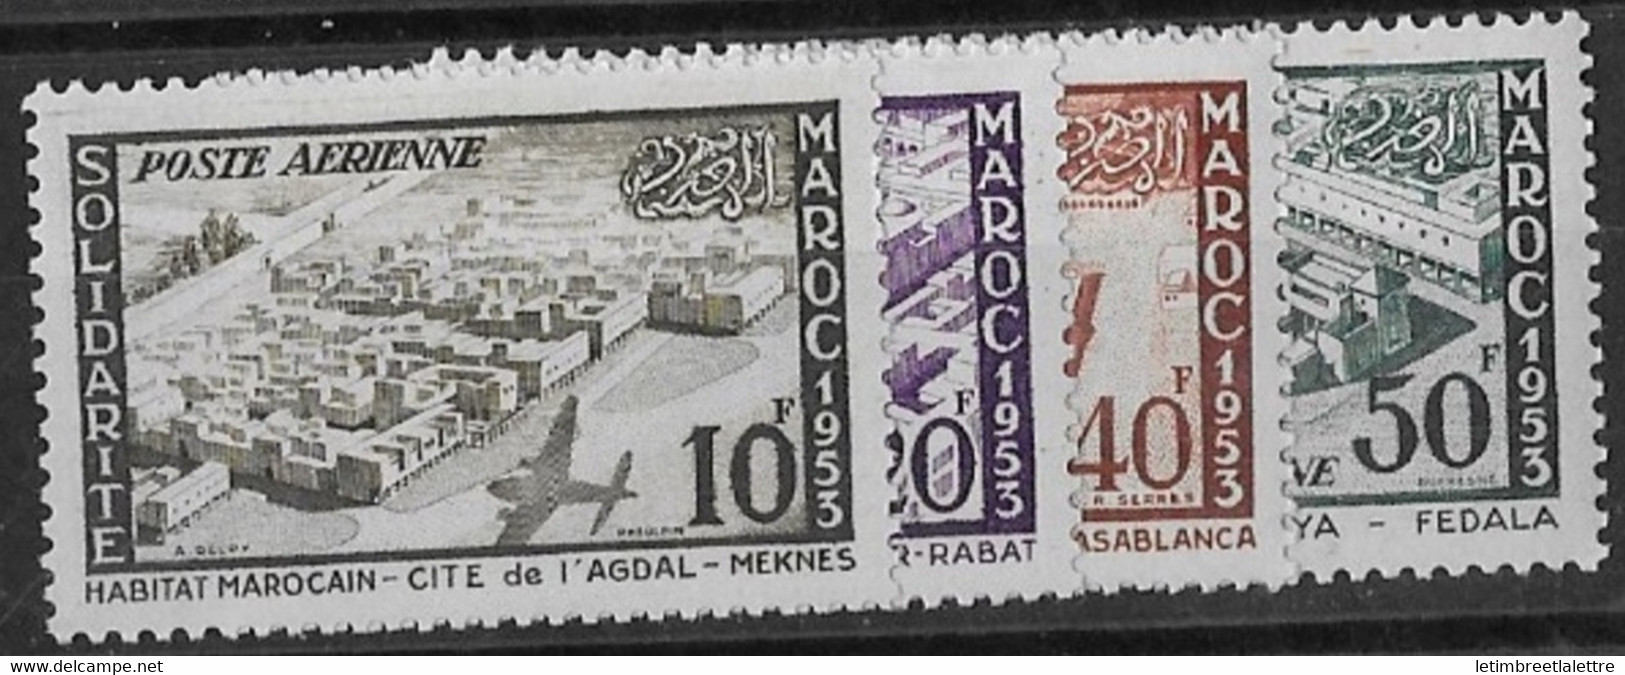 ⭐ Maroc - Poste Aérienne - YT N° 94 à 97 ** - Neuf Sans Charnière - 1954 ⭐ - Airmail